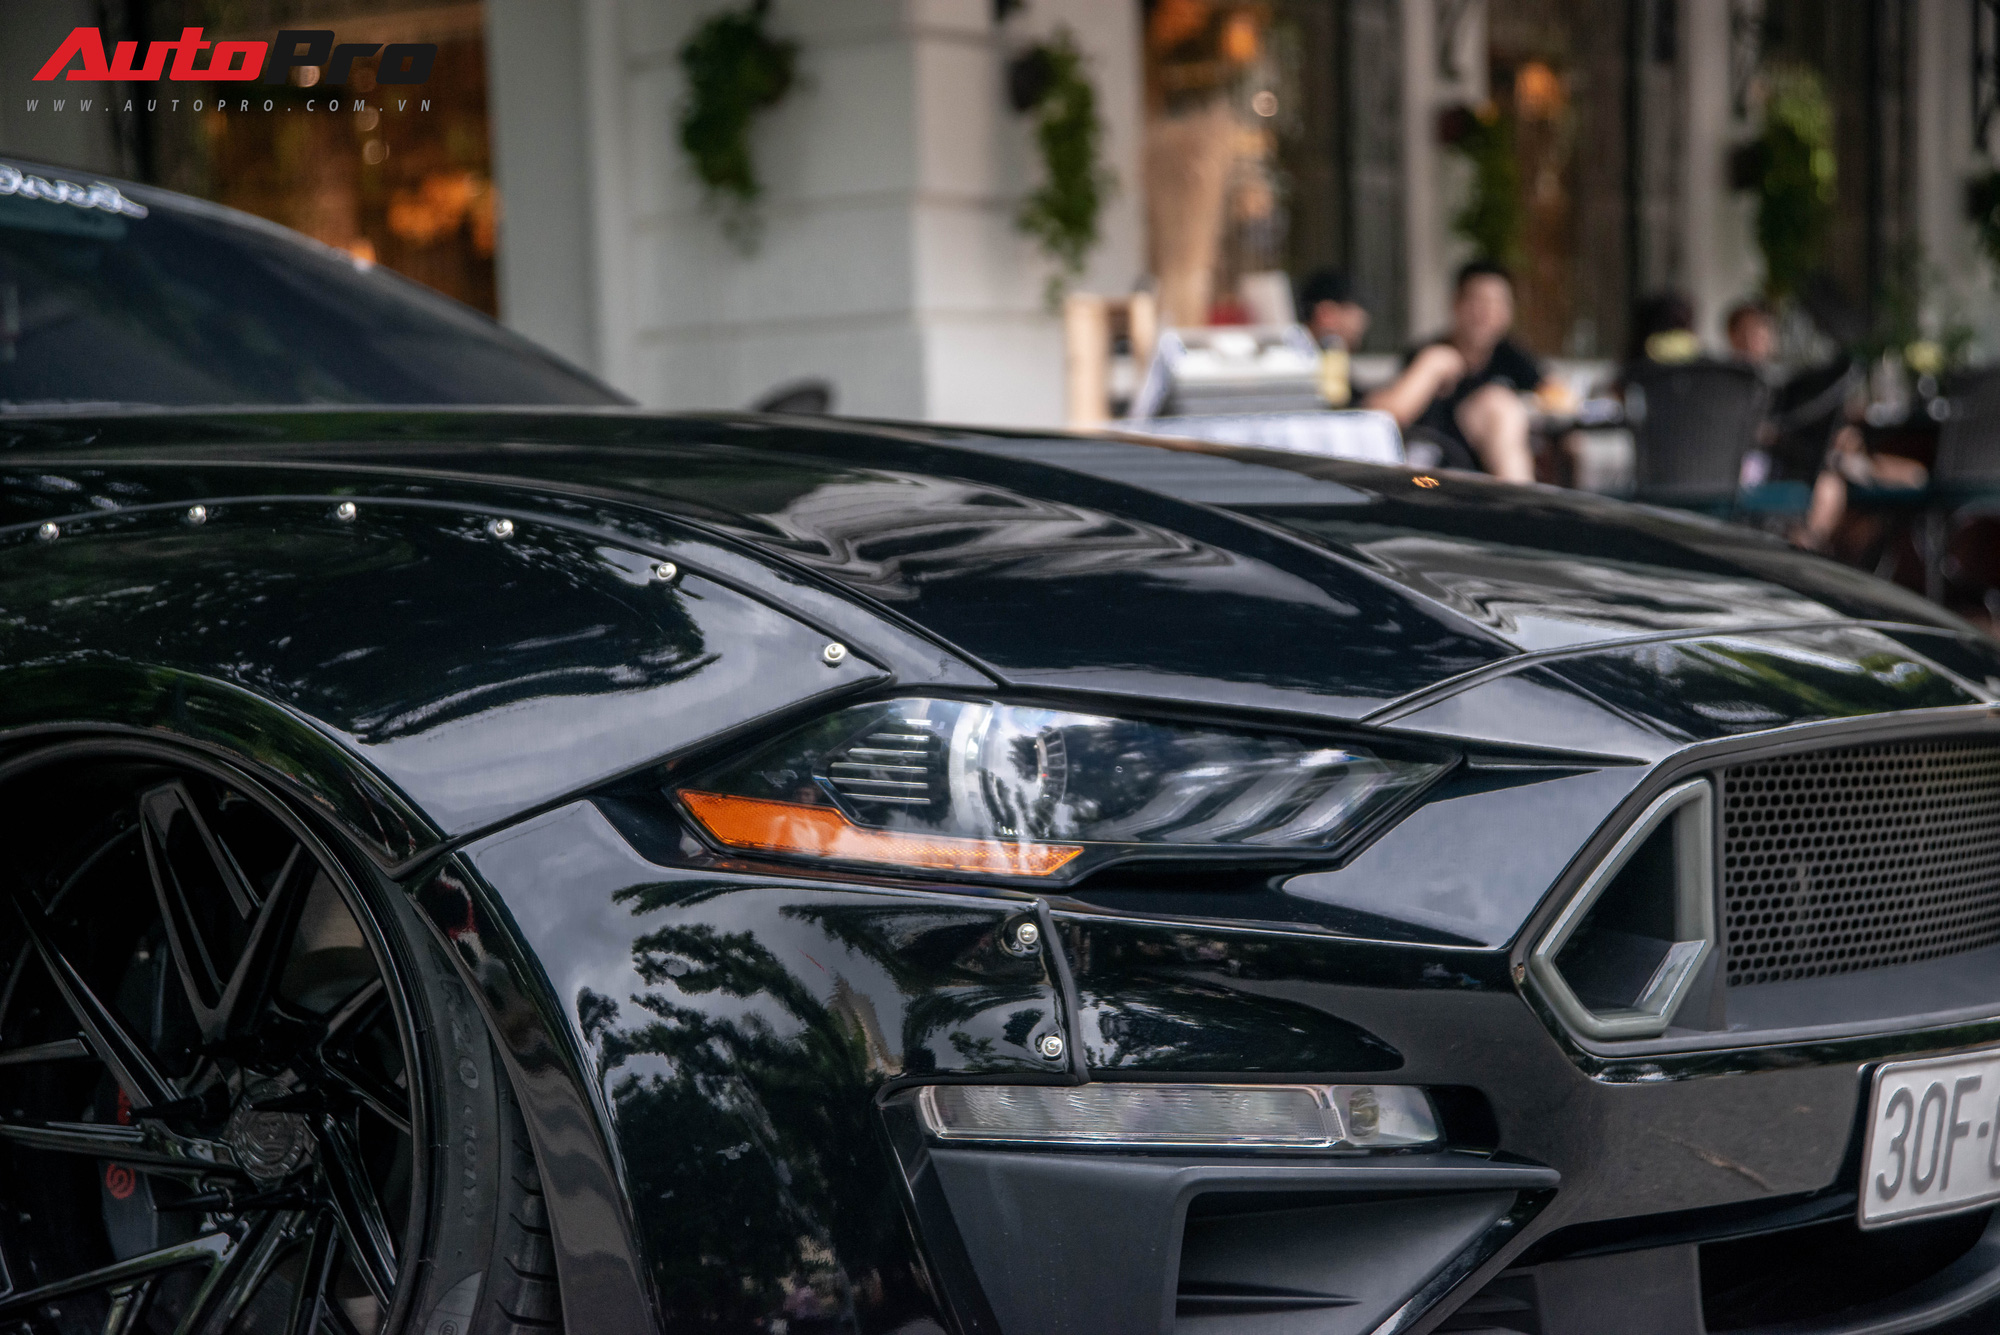 Ngắm Ford Mustang GT 5.0 độ widebody cực độc trên đường phố Hà Nội, cách đỗ xe khiến nhiều người ngạc nhiên - Ảnh 4.